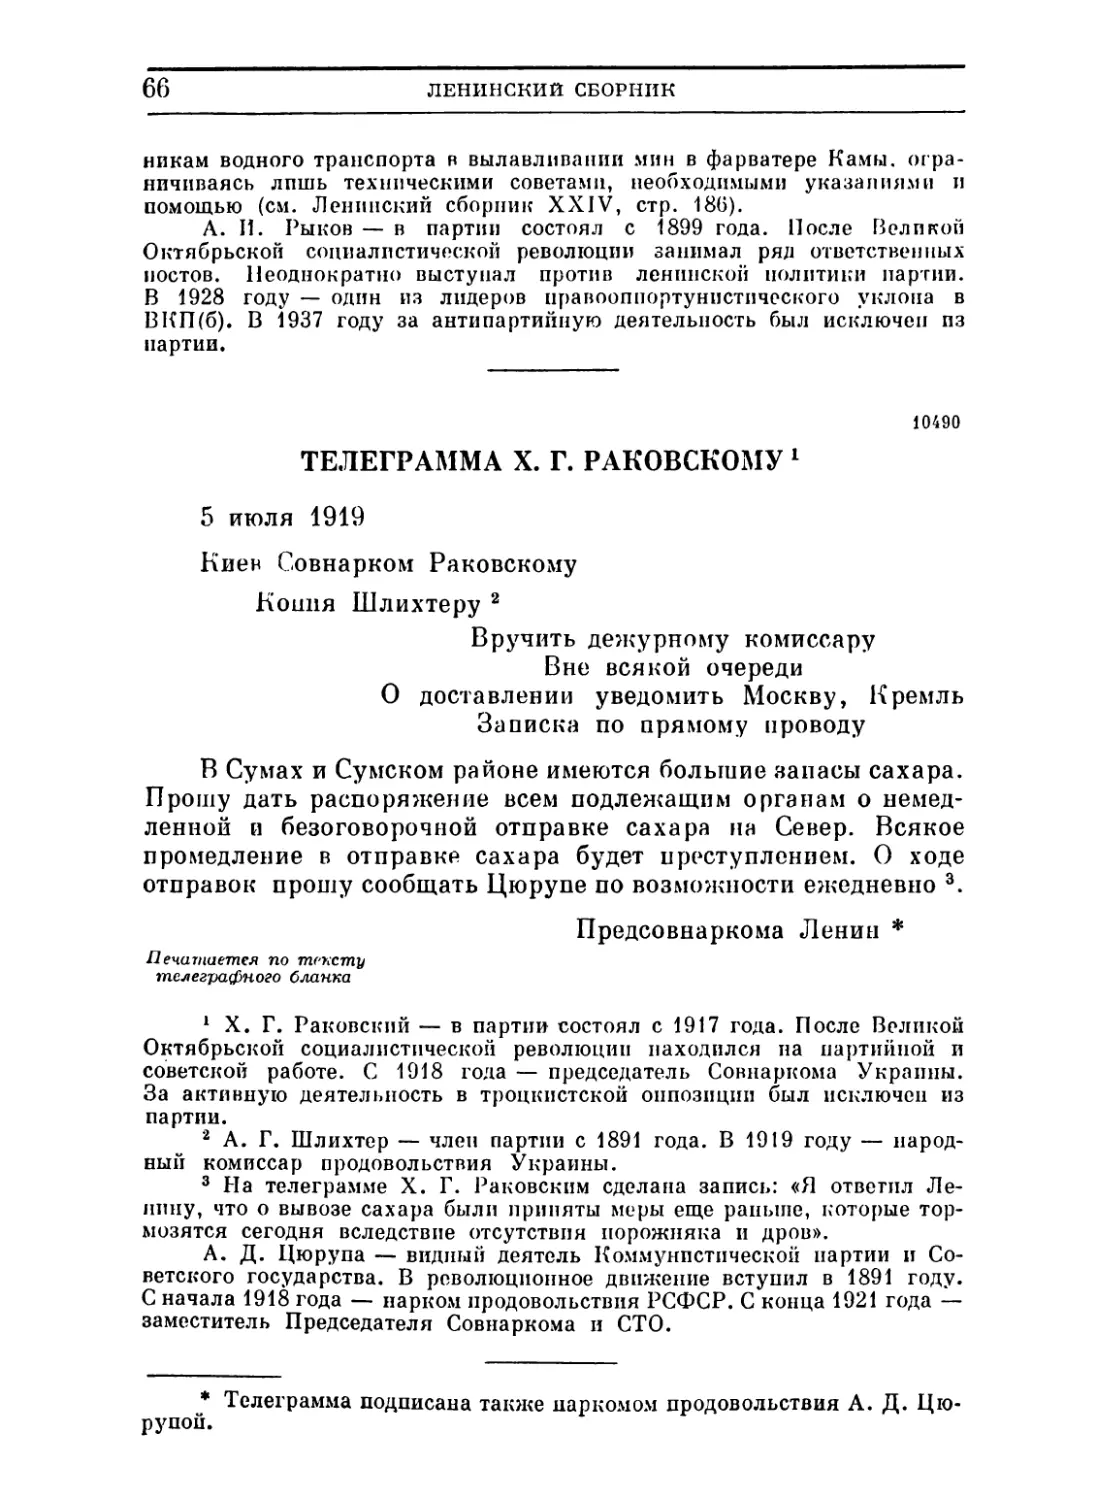 Телеграмма X. Г. Раковскому. 5 июля 1919